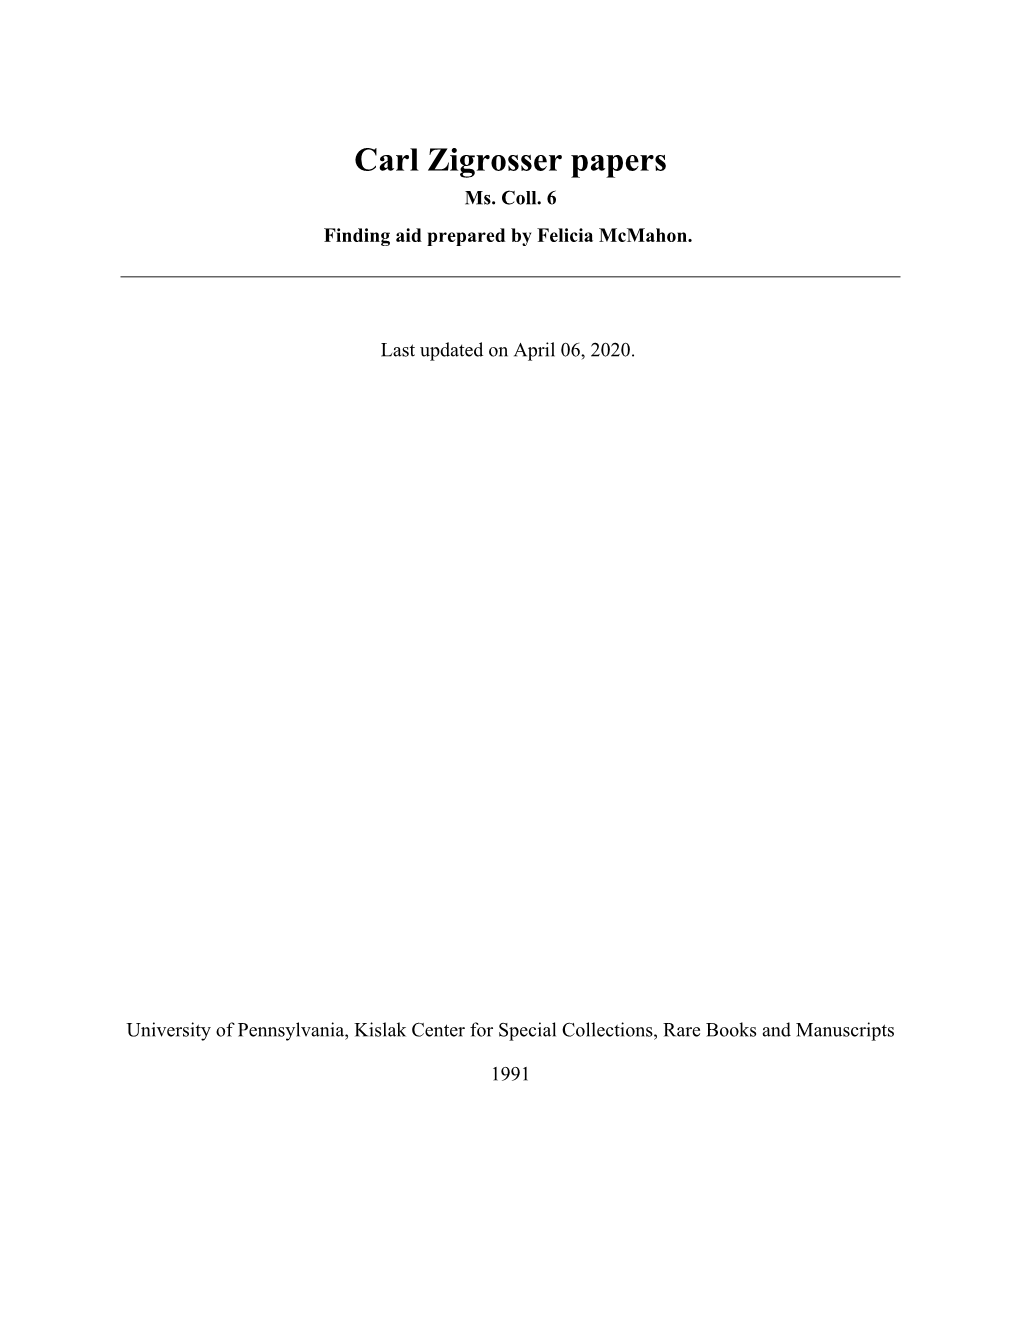 Carl Zigrosser Papers Ms